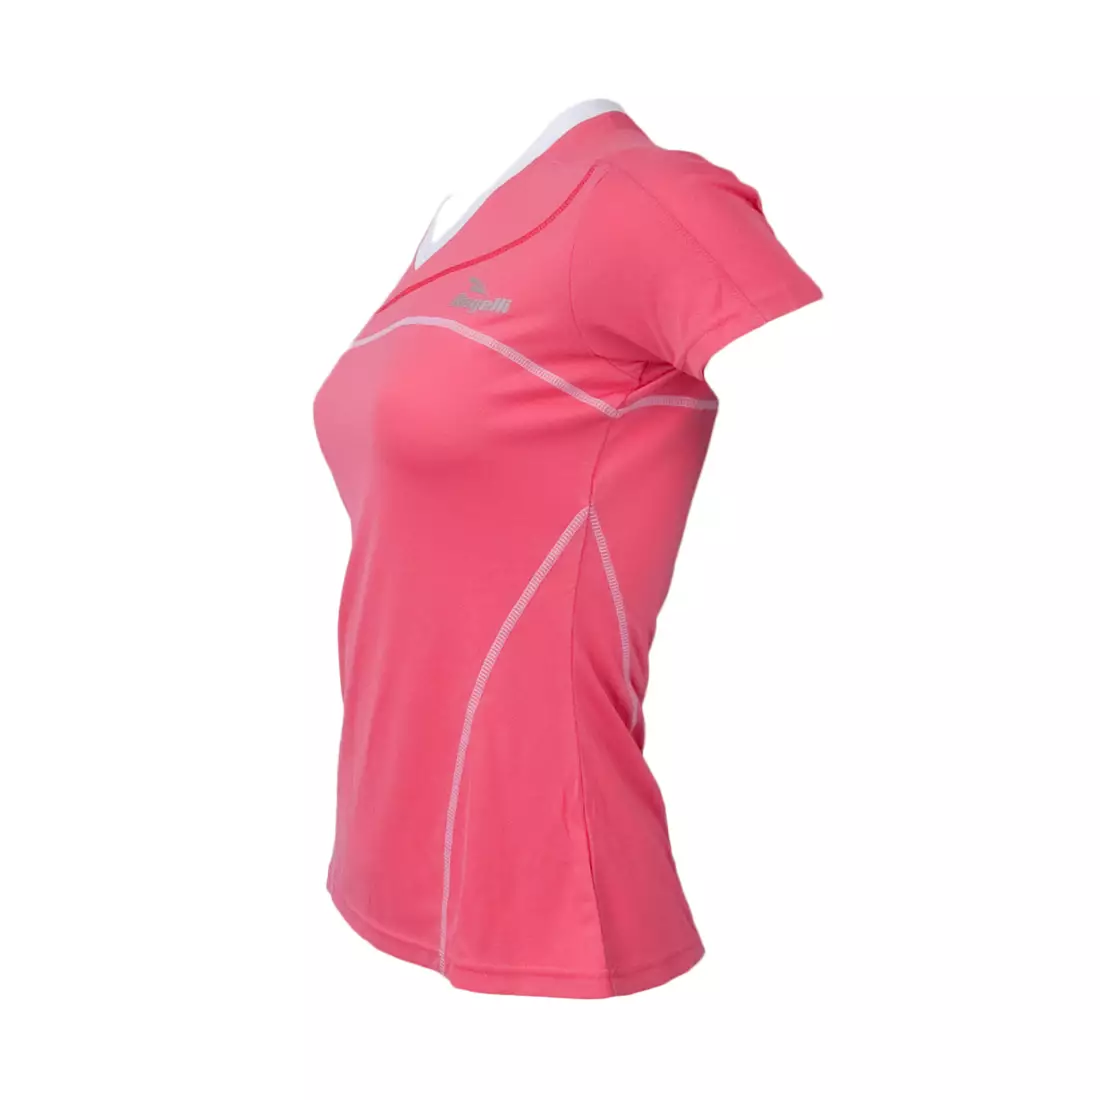 ROGELLI RUN - MIRAL - Női futópóló, színe: rózsaszín